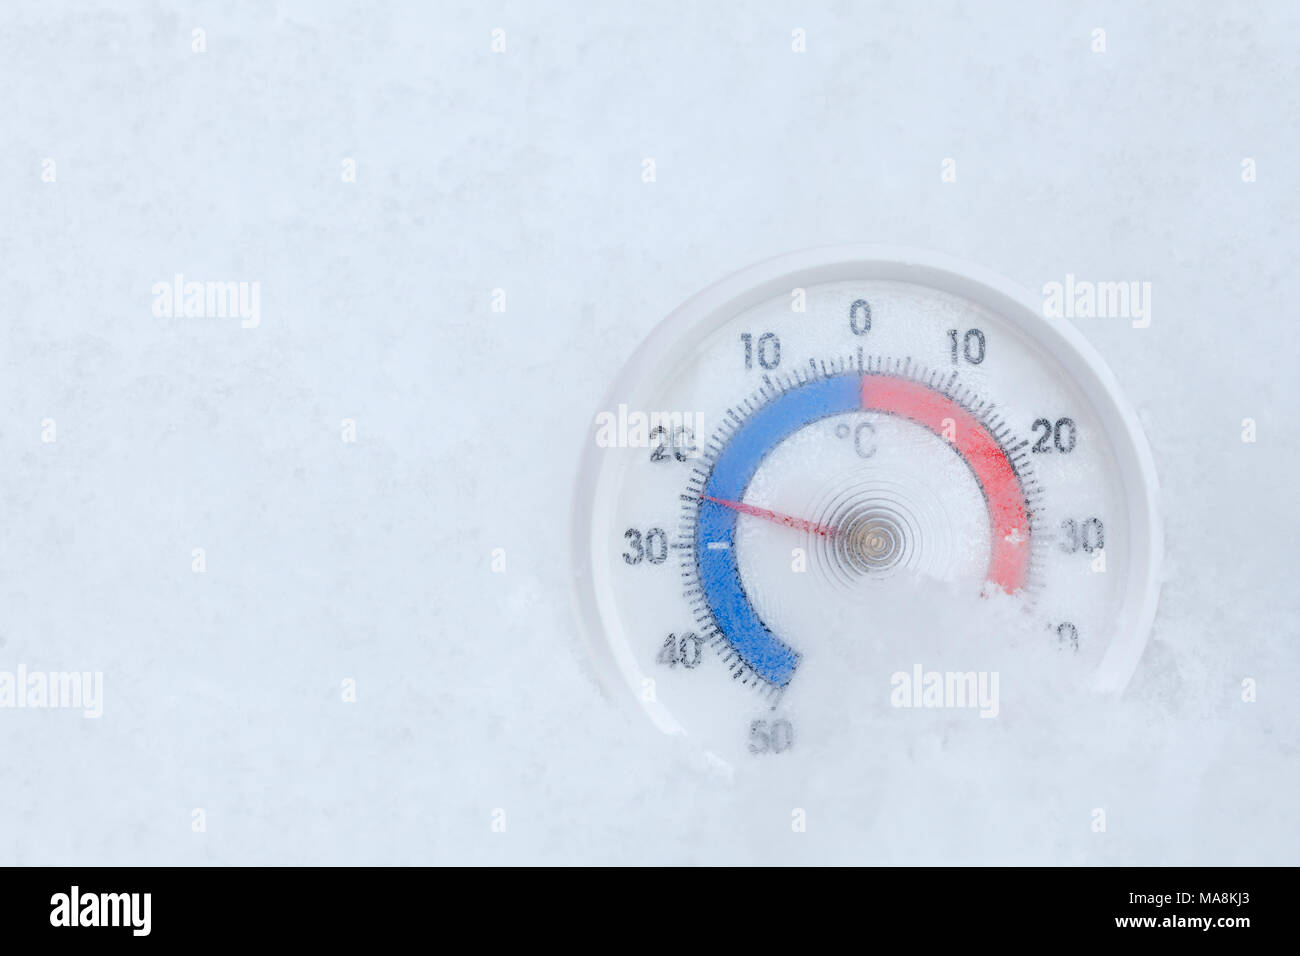 Thermometer mit Celsius in einem frischen Schnee mit Sub-zero Temperatur  minus 24 Grad kalten frostigen Winter Wetter Konzept plaziert  Stockfotografie - Alamy